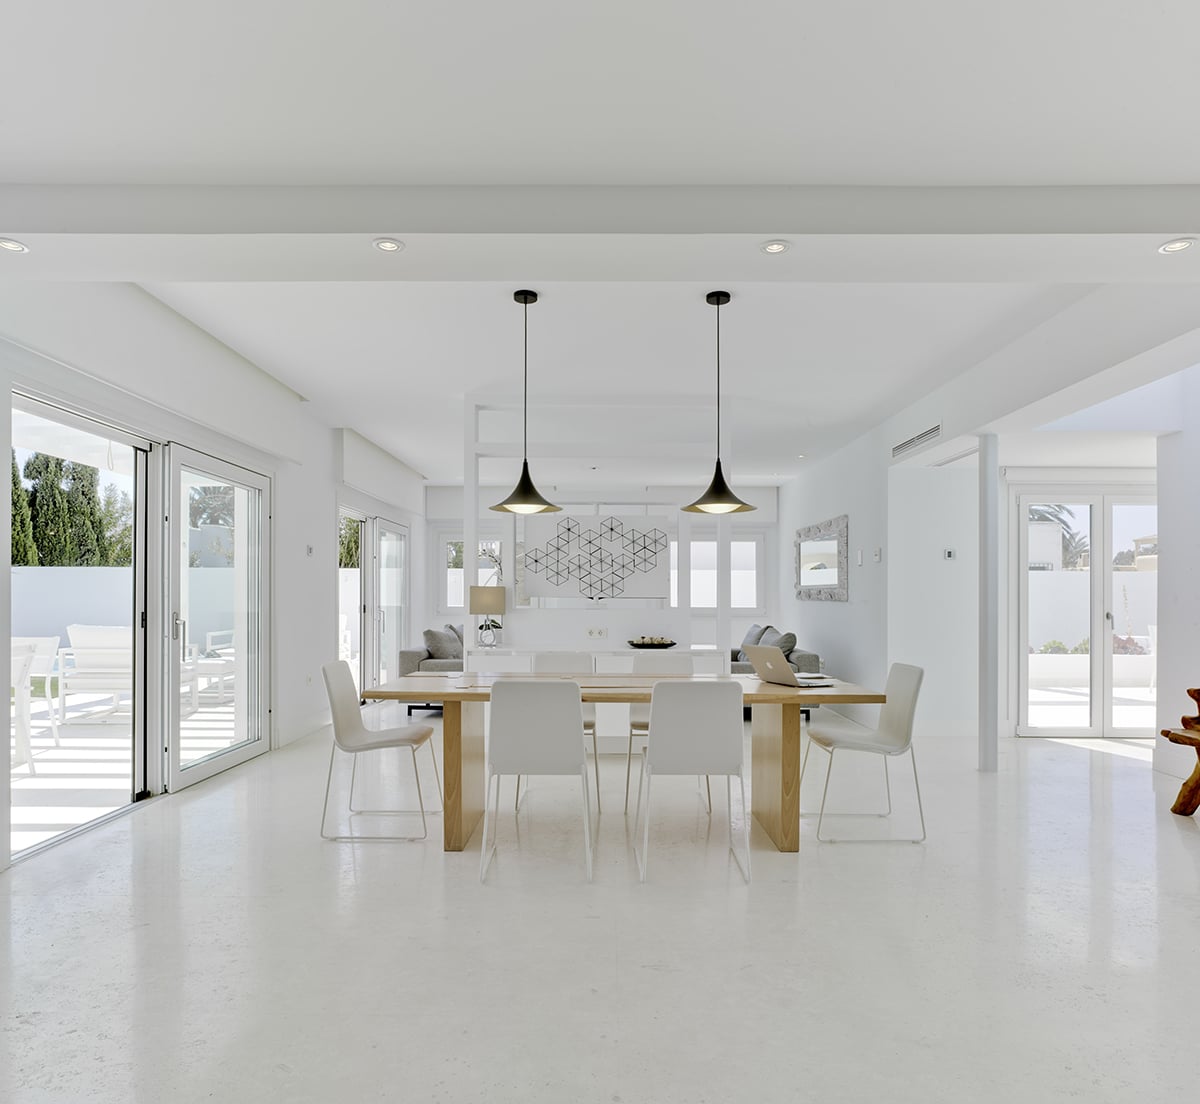 estilo mediterránea Tendencia de decoración de casas 2020